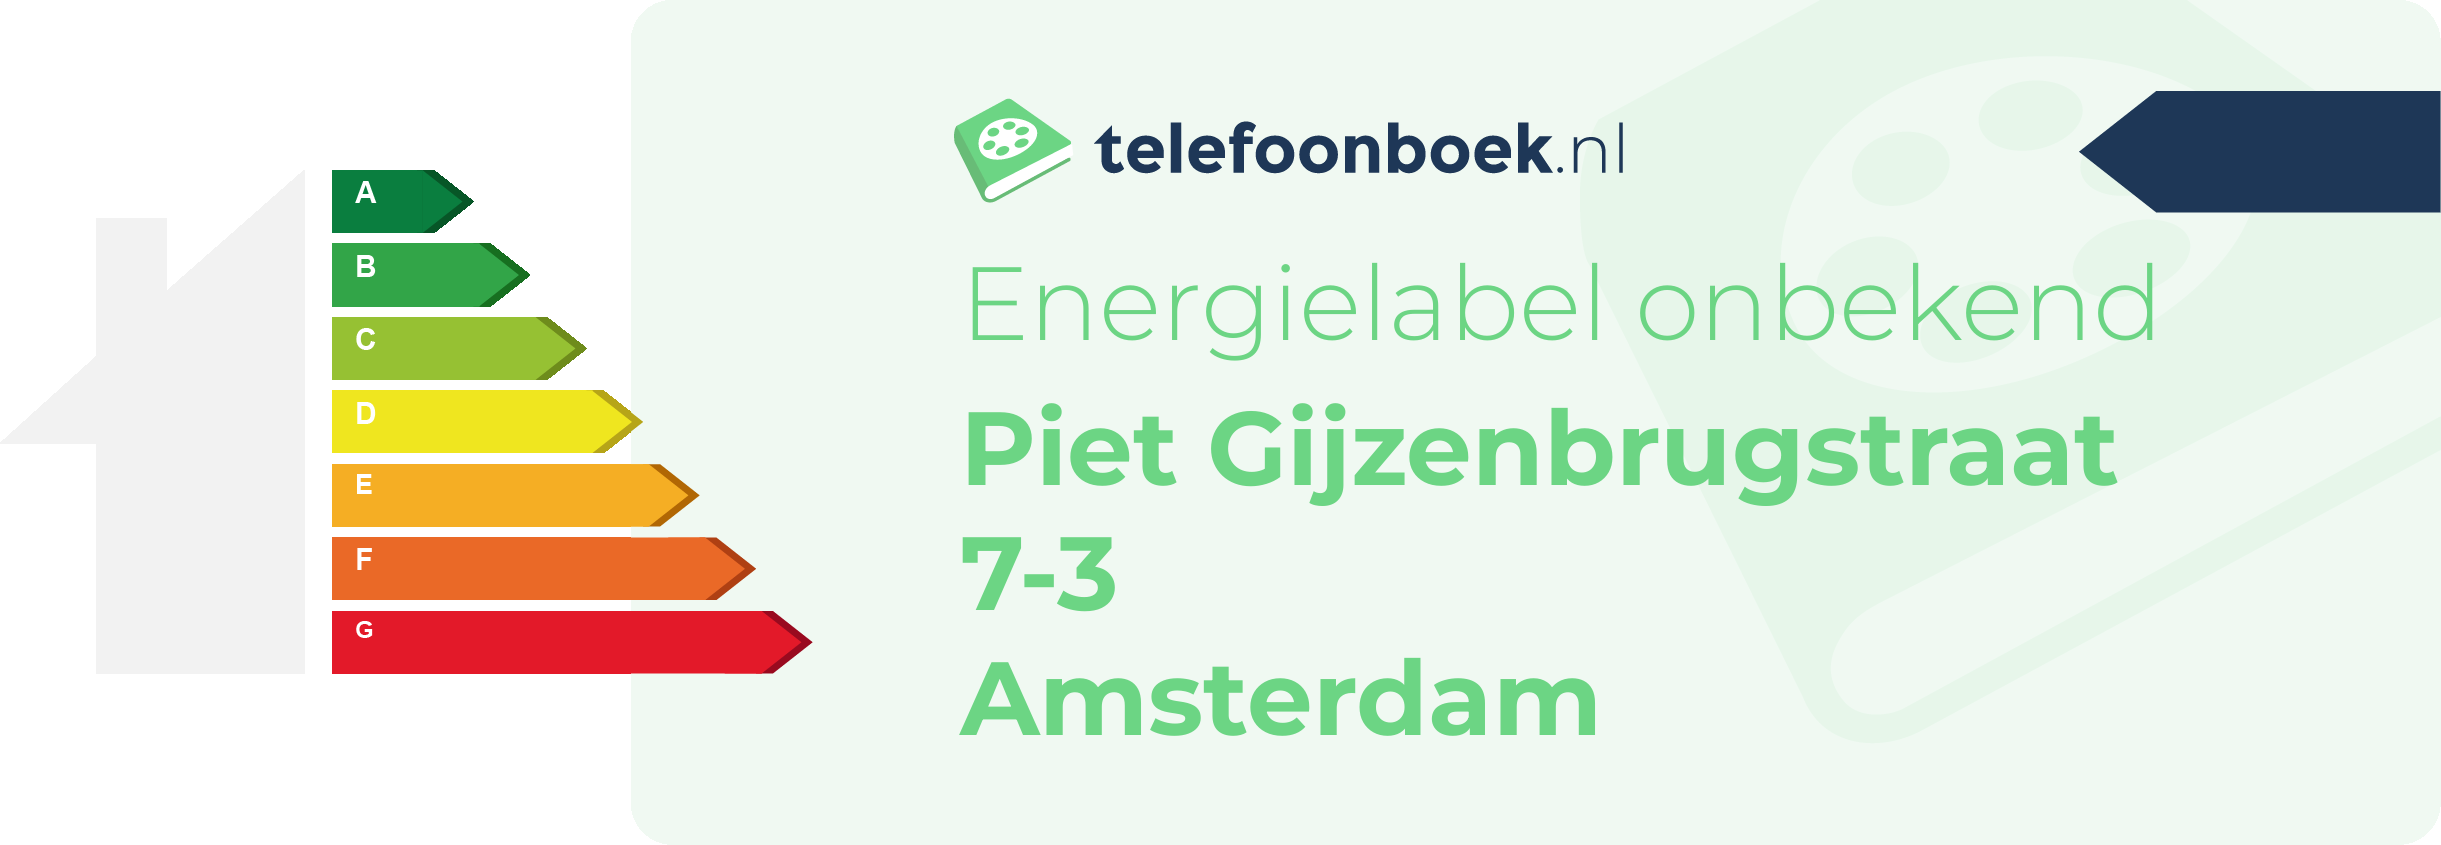 Energielabel Piet Gijzenbrugstraat 7-3 Amsterdam